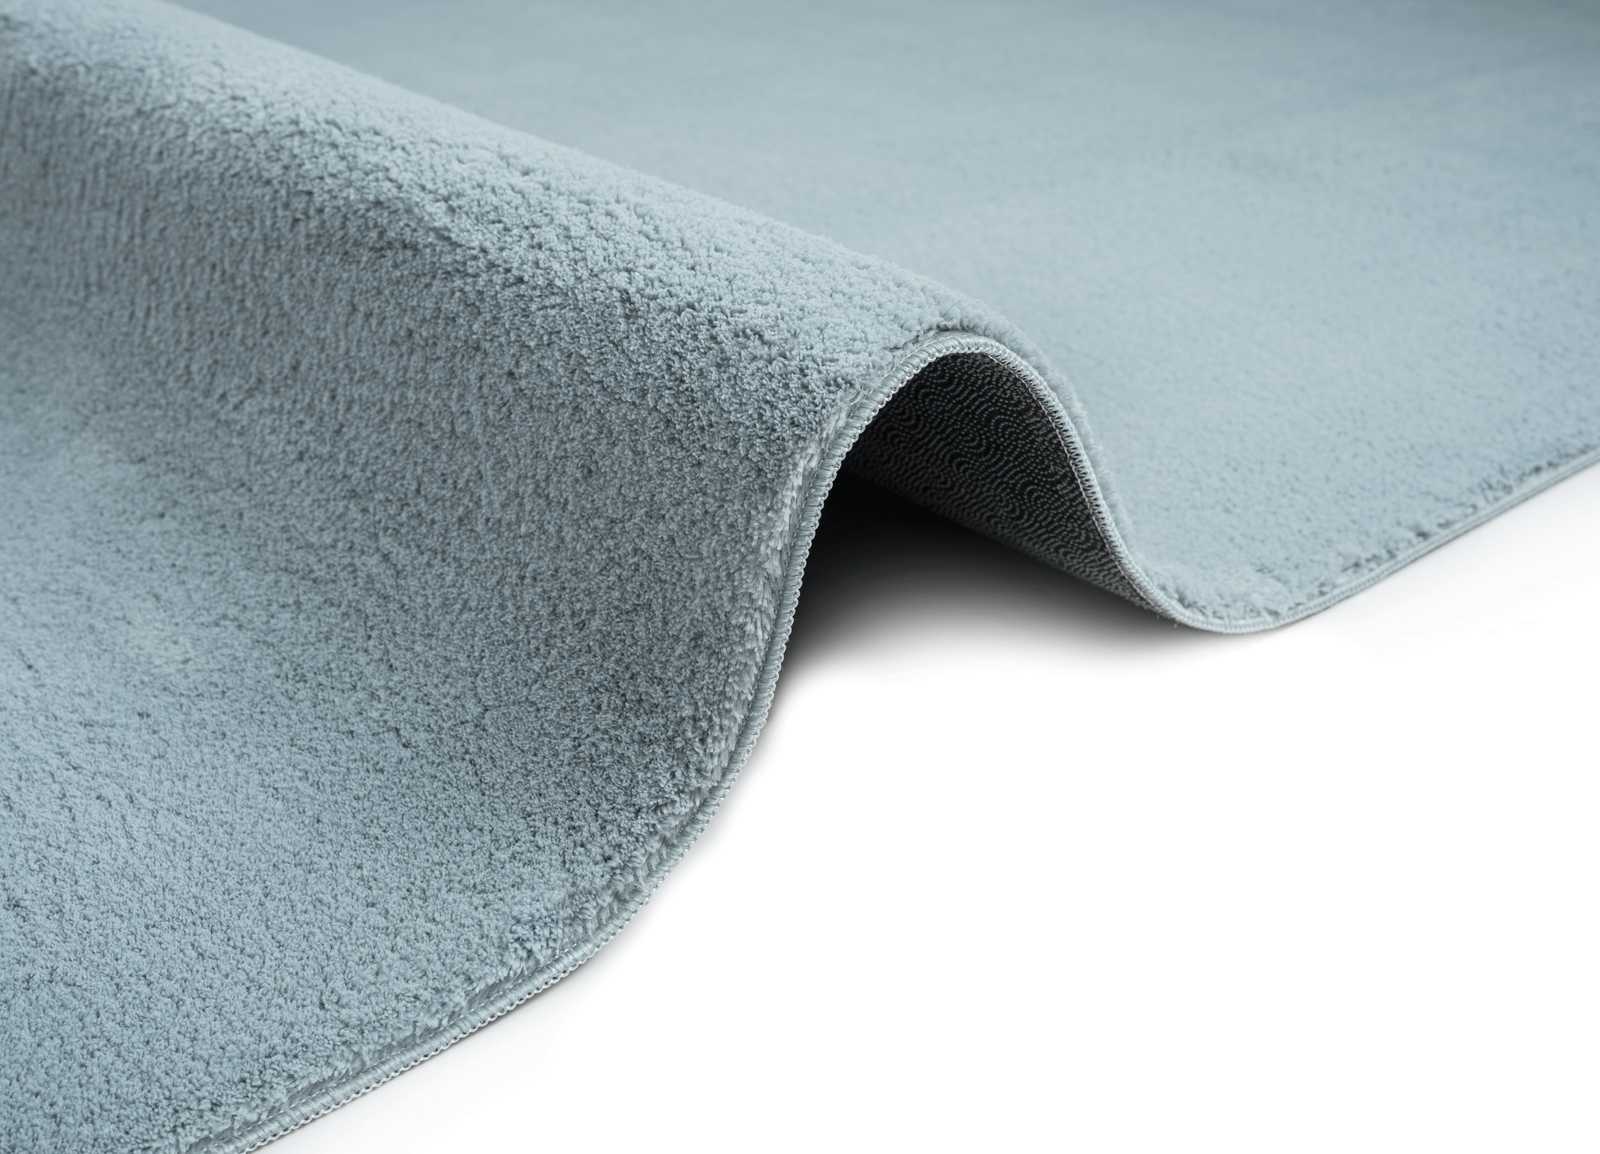             Fluffy high pile carpet in blue - 150 x 80 cm
        